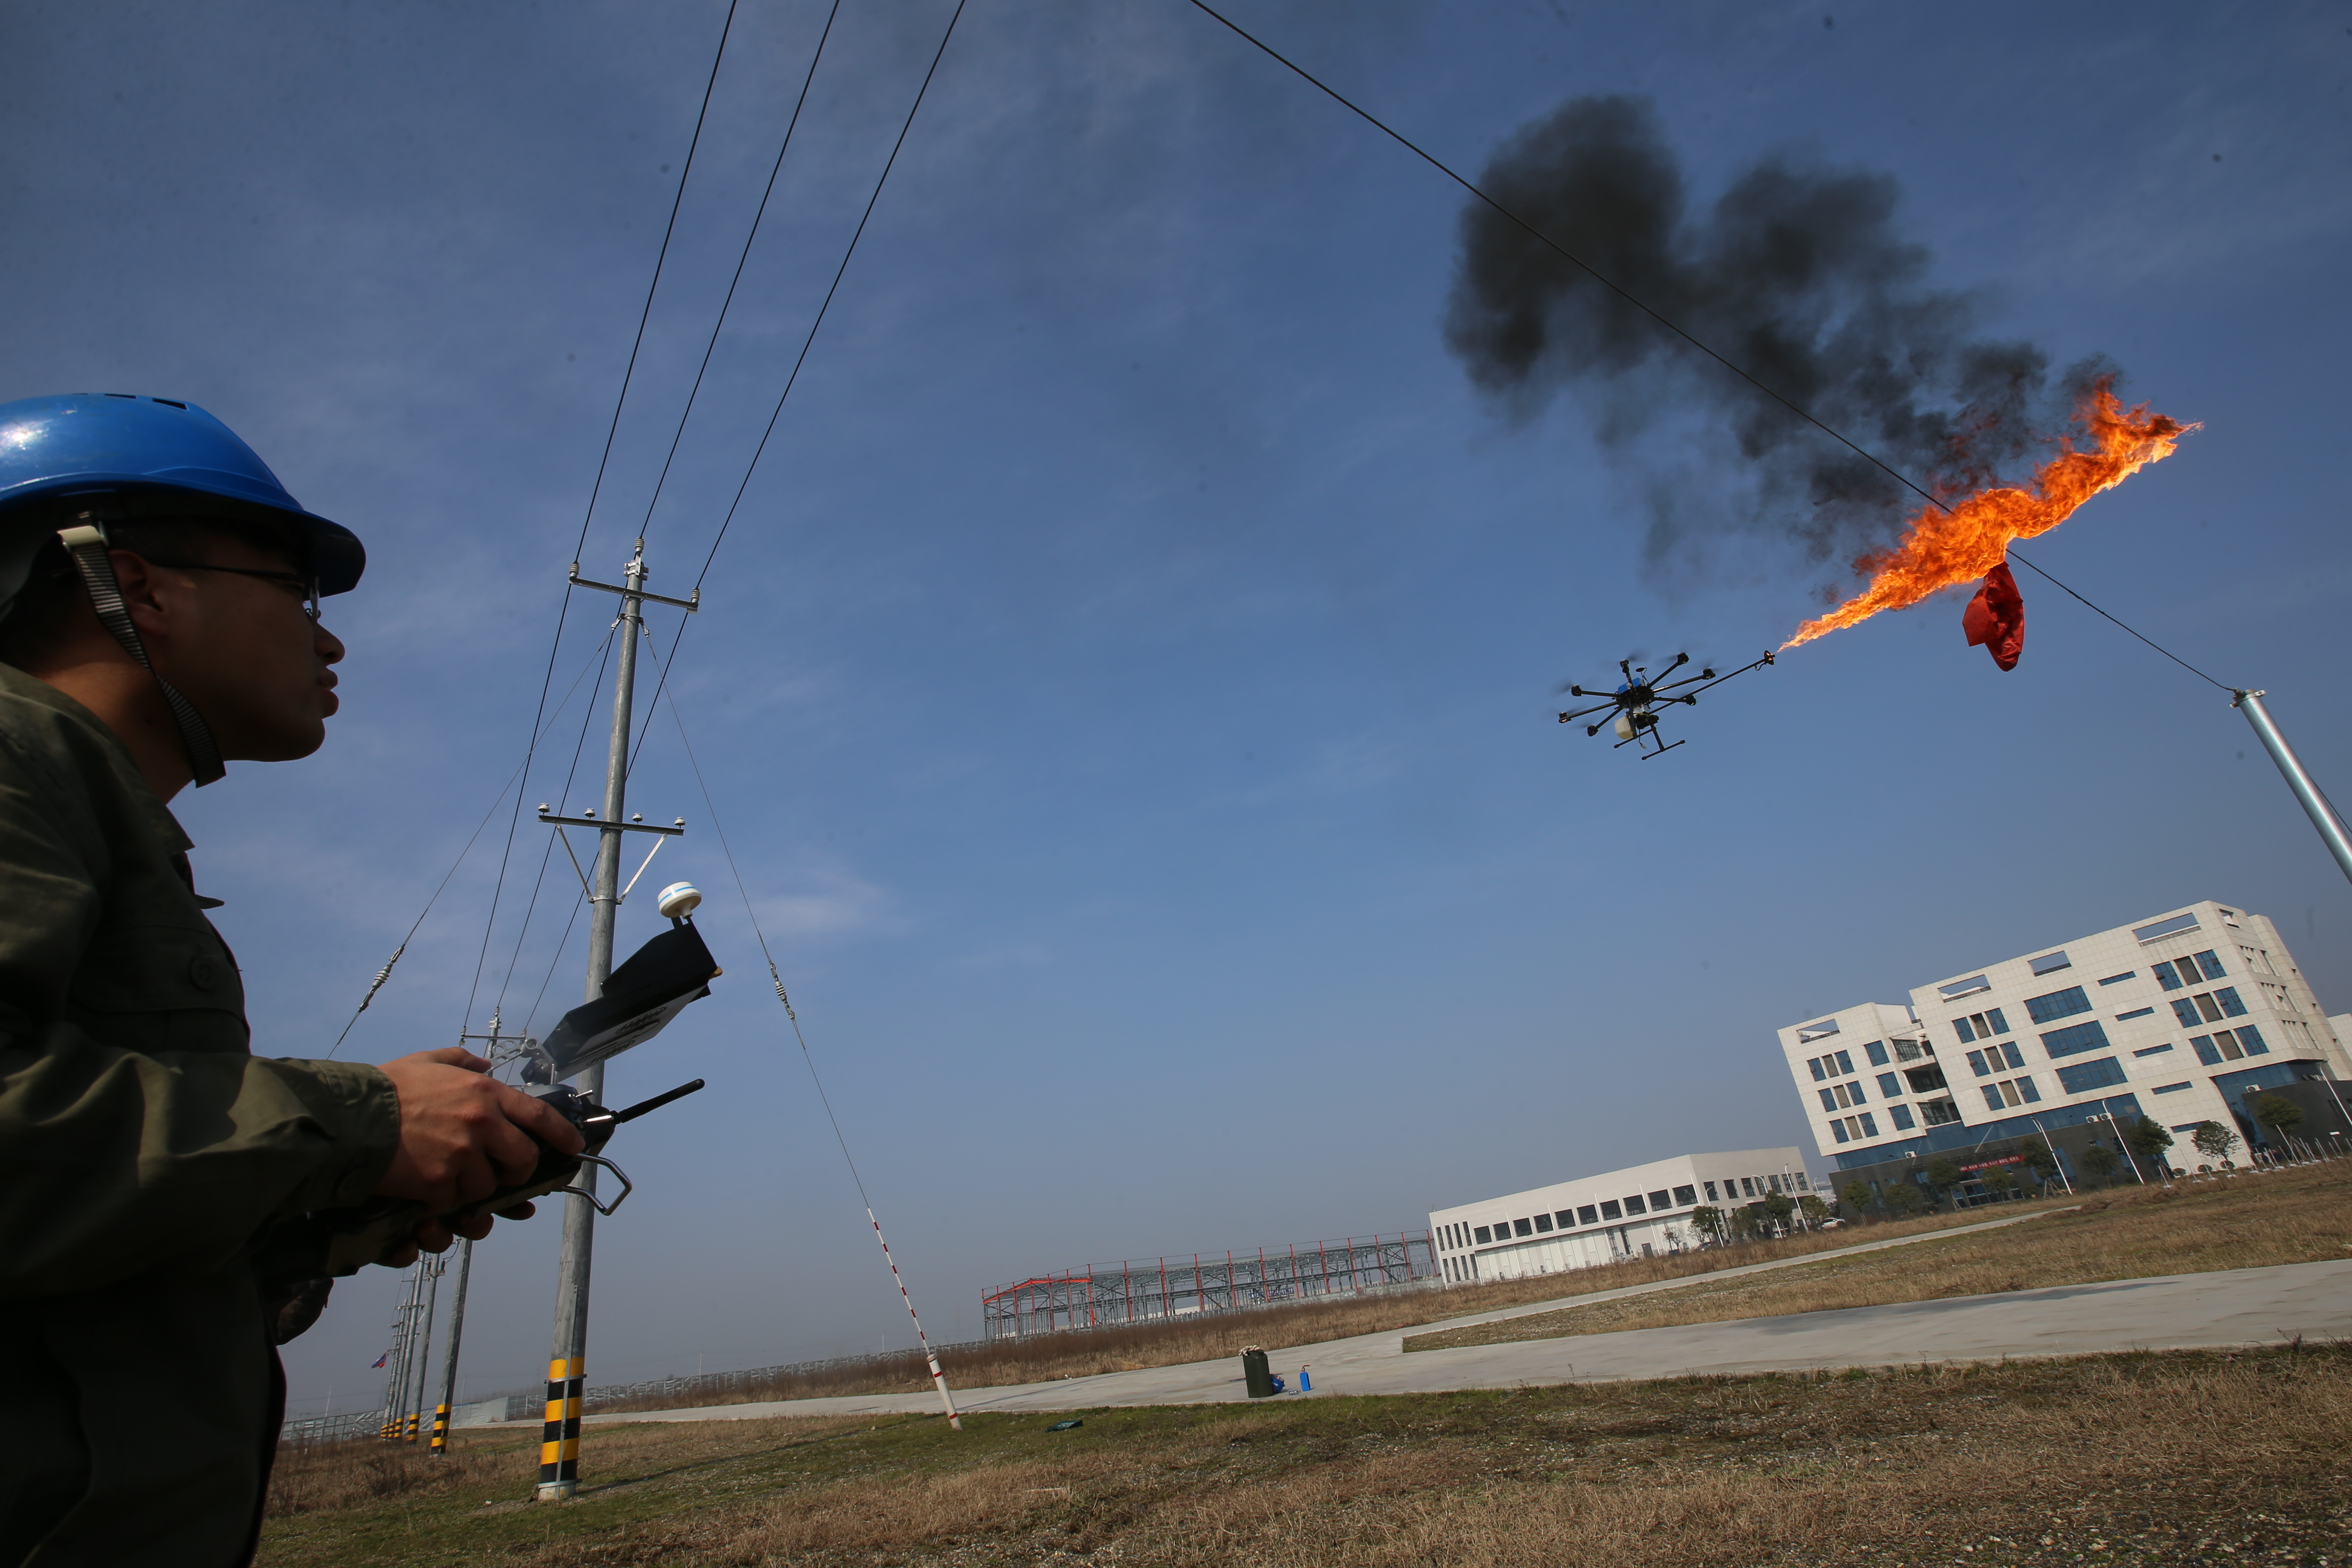 В Китае намерены бороться с зацепившимся за линии электропередачи мусором при помощи дронов-огнеметов